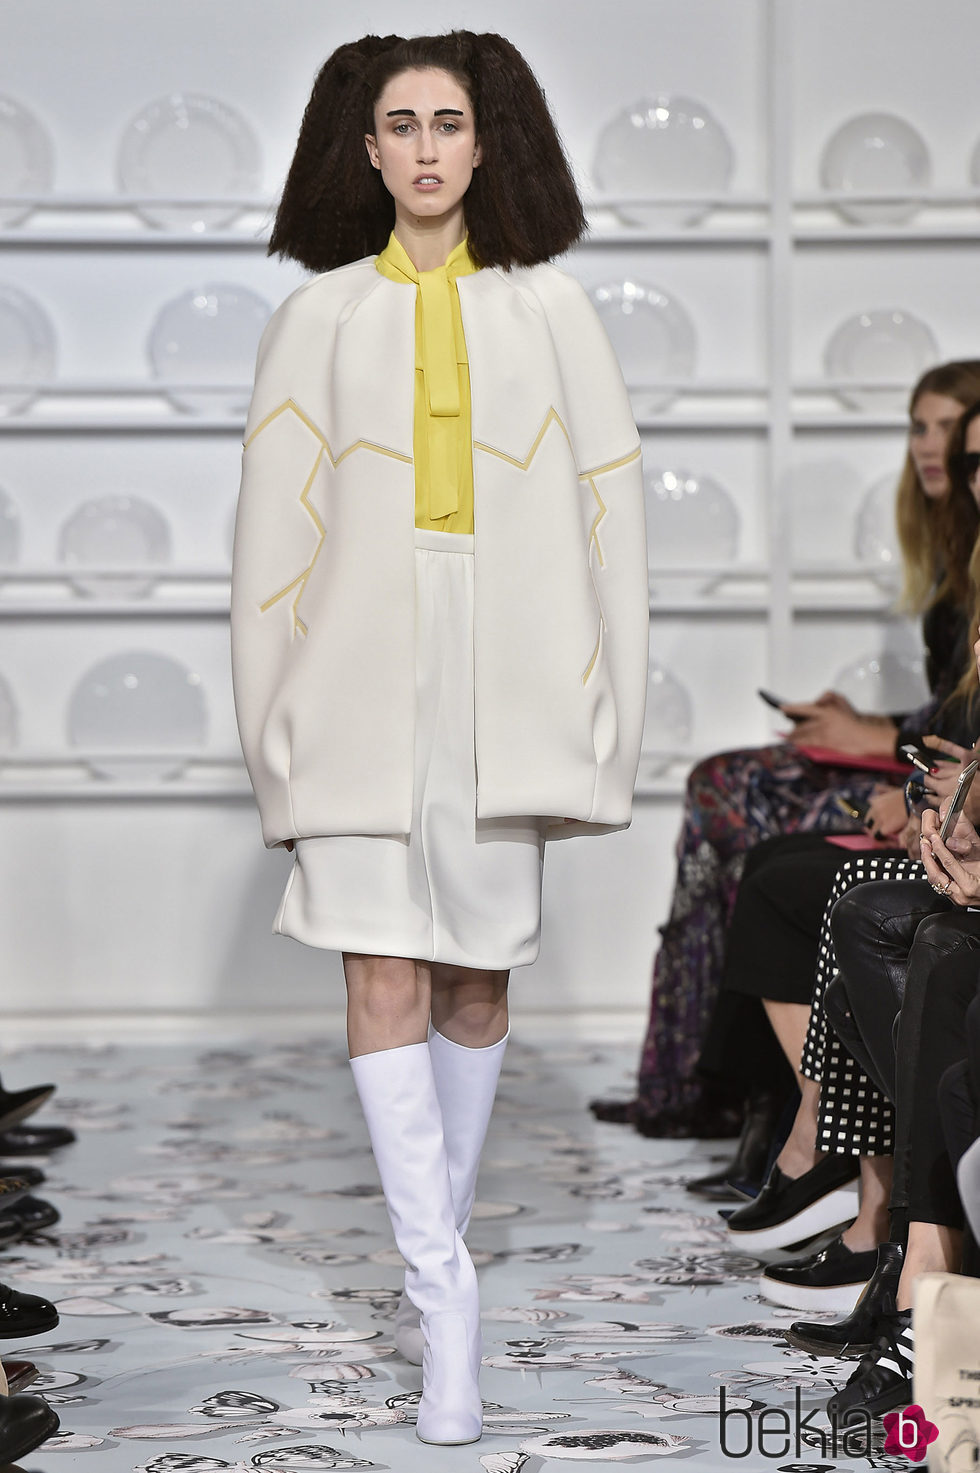 Traje blanco y amarillo de chaqueta y falda  de Schiaparelli en la Semana de la Alta Costura de París Primavera/Verano 2016